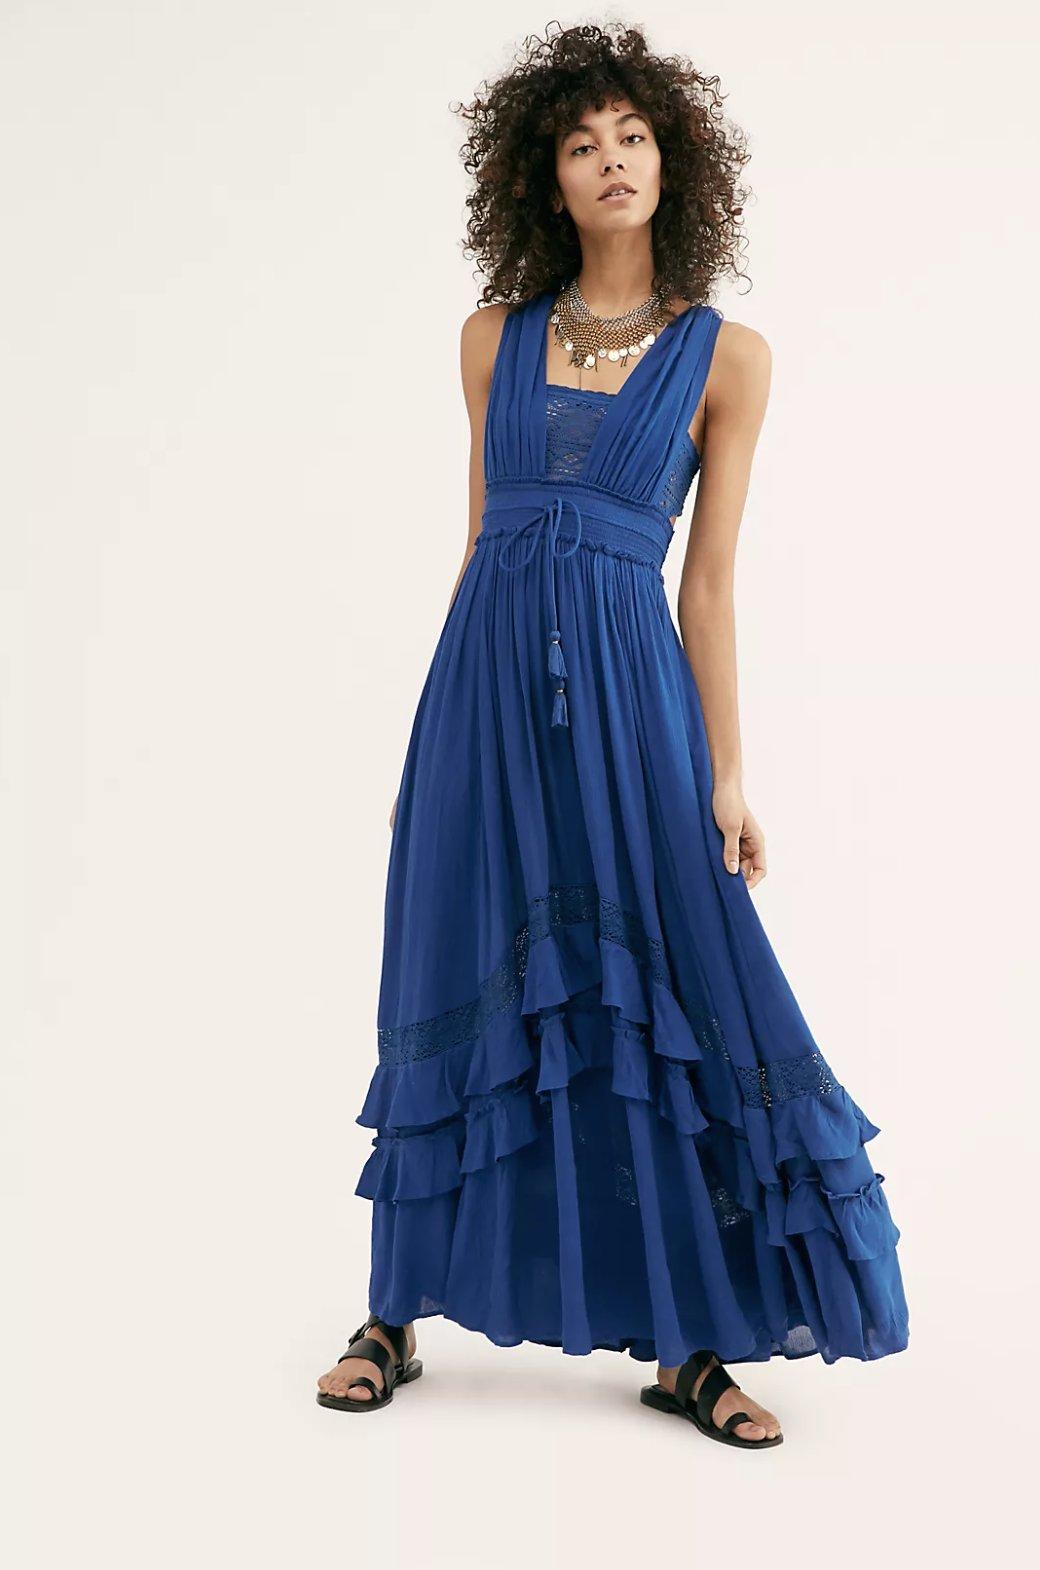 blue bohemian bridesmaid dresses